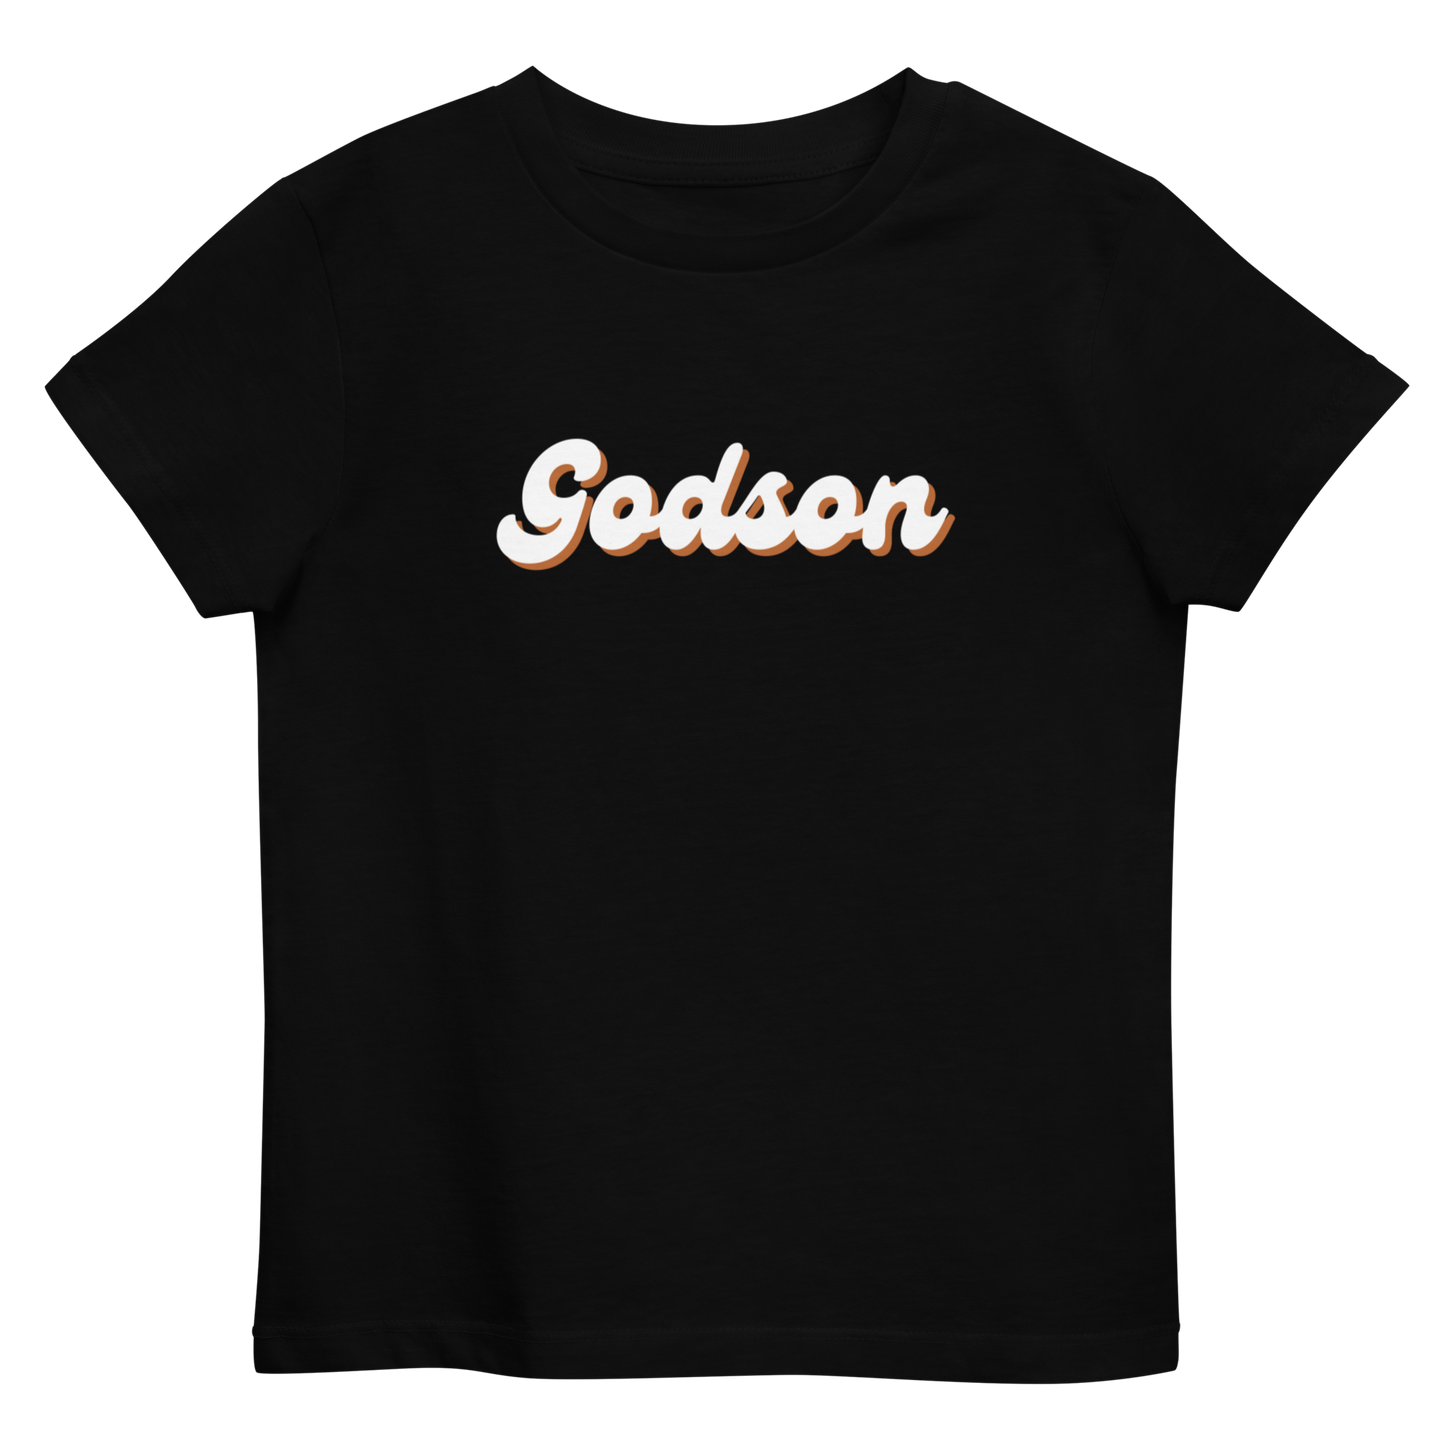 GODSON